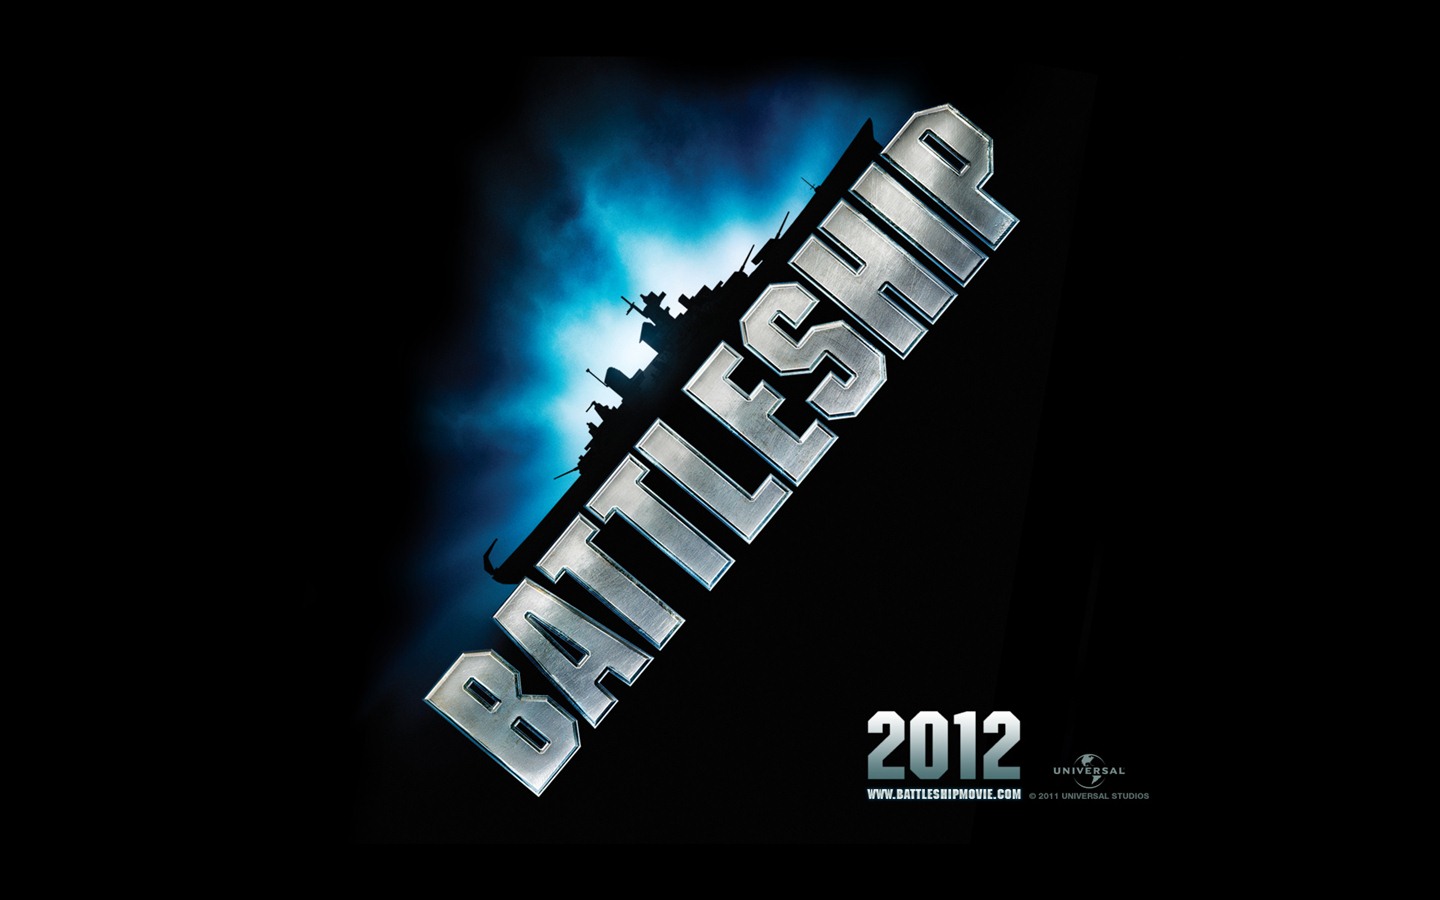 Battleship 2012 HD wallpapers #2 - 1440x900